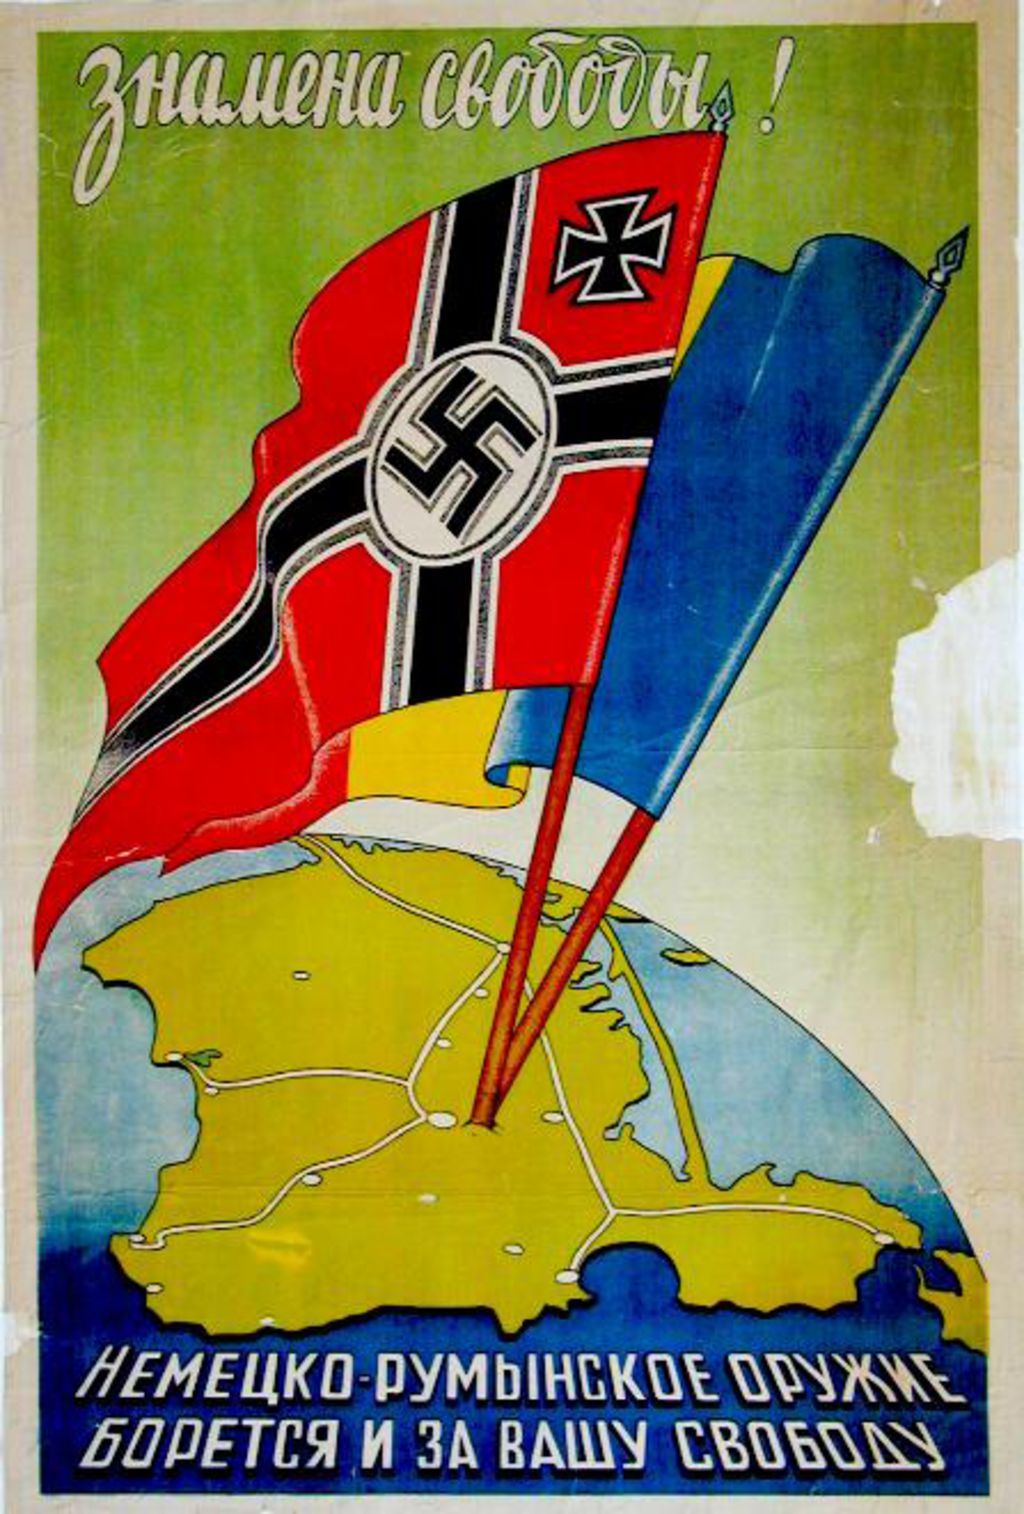 Exponat: Plakat: Im Zeichen der Freiheit, 1942